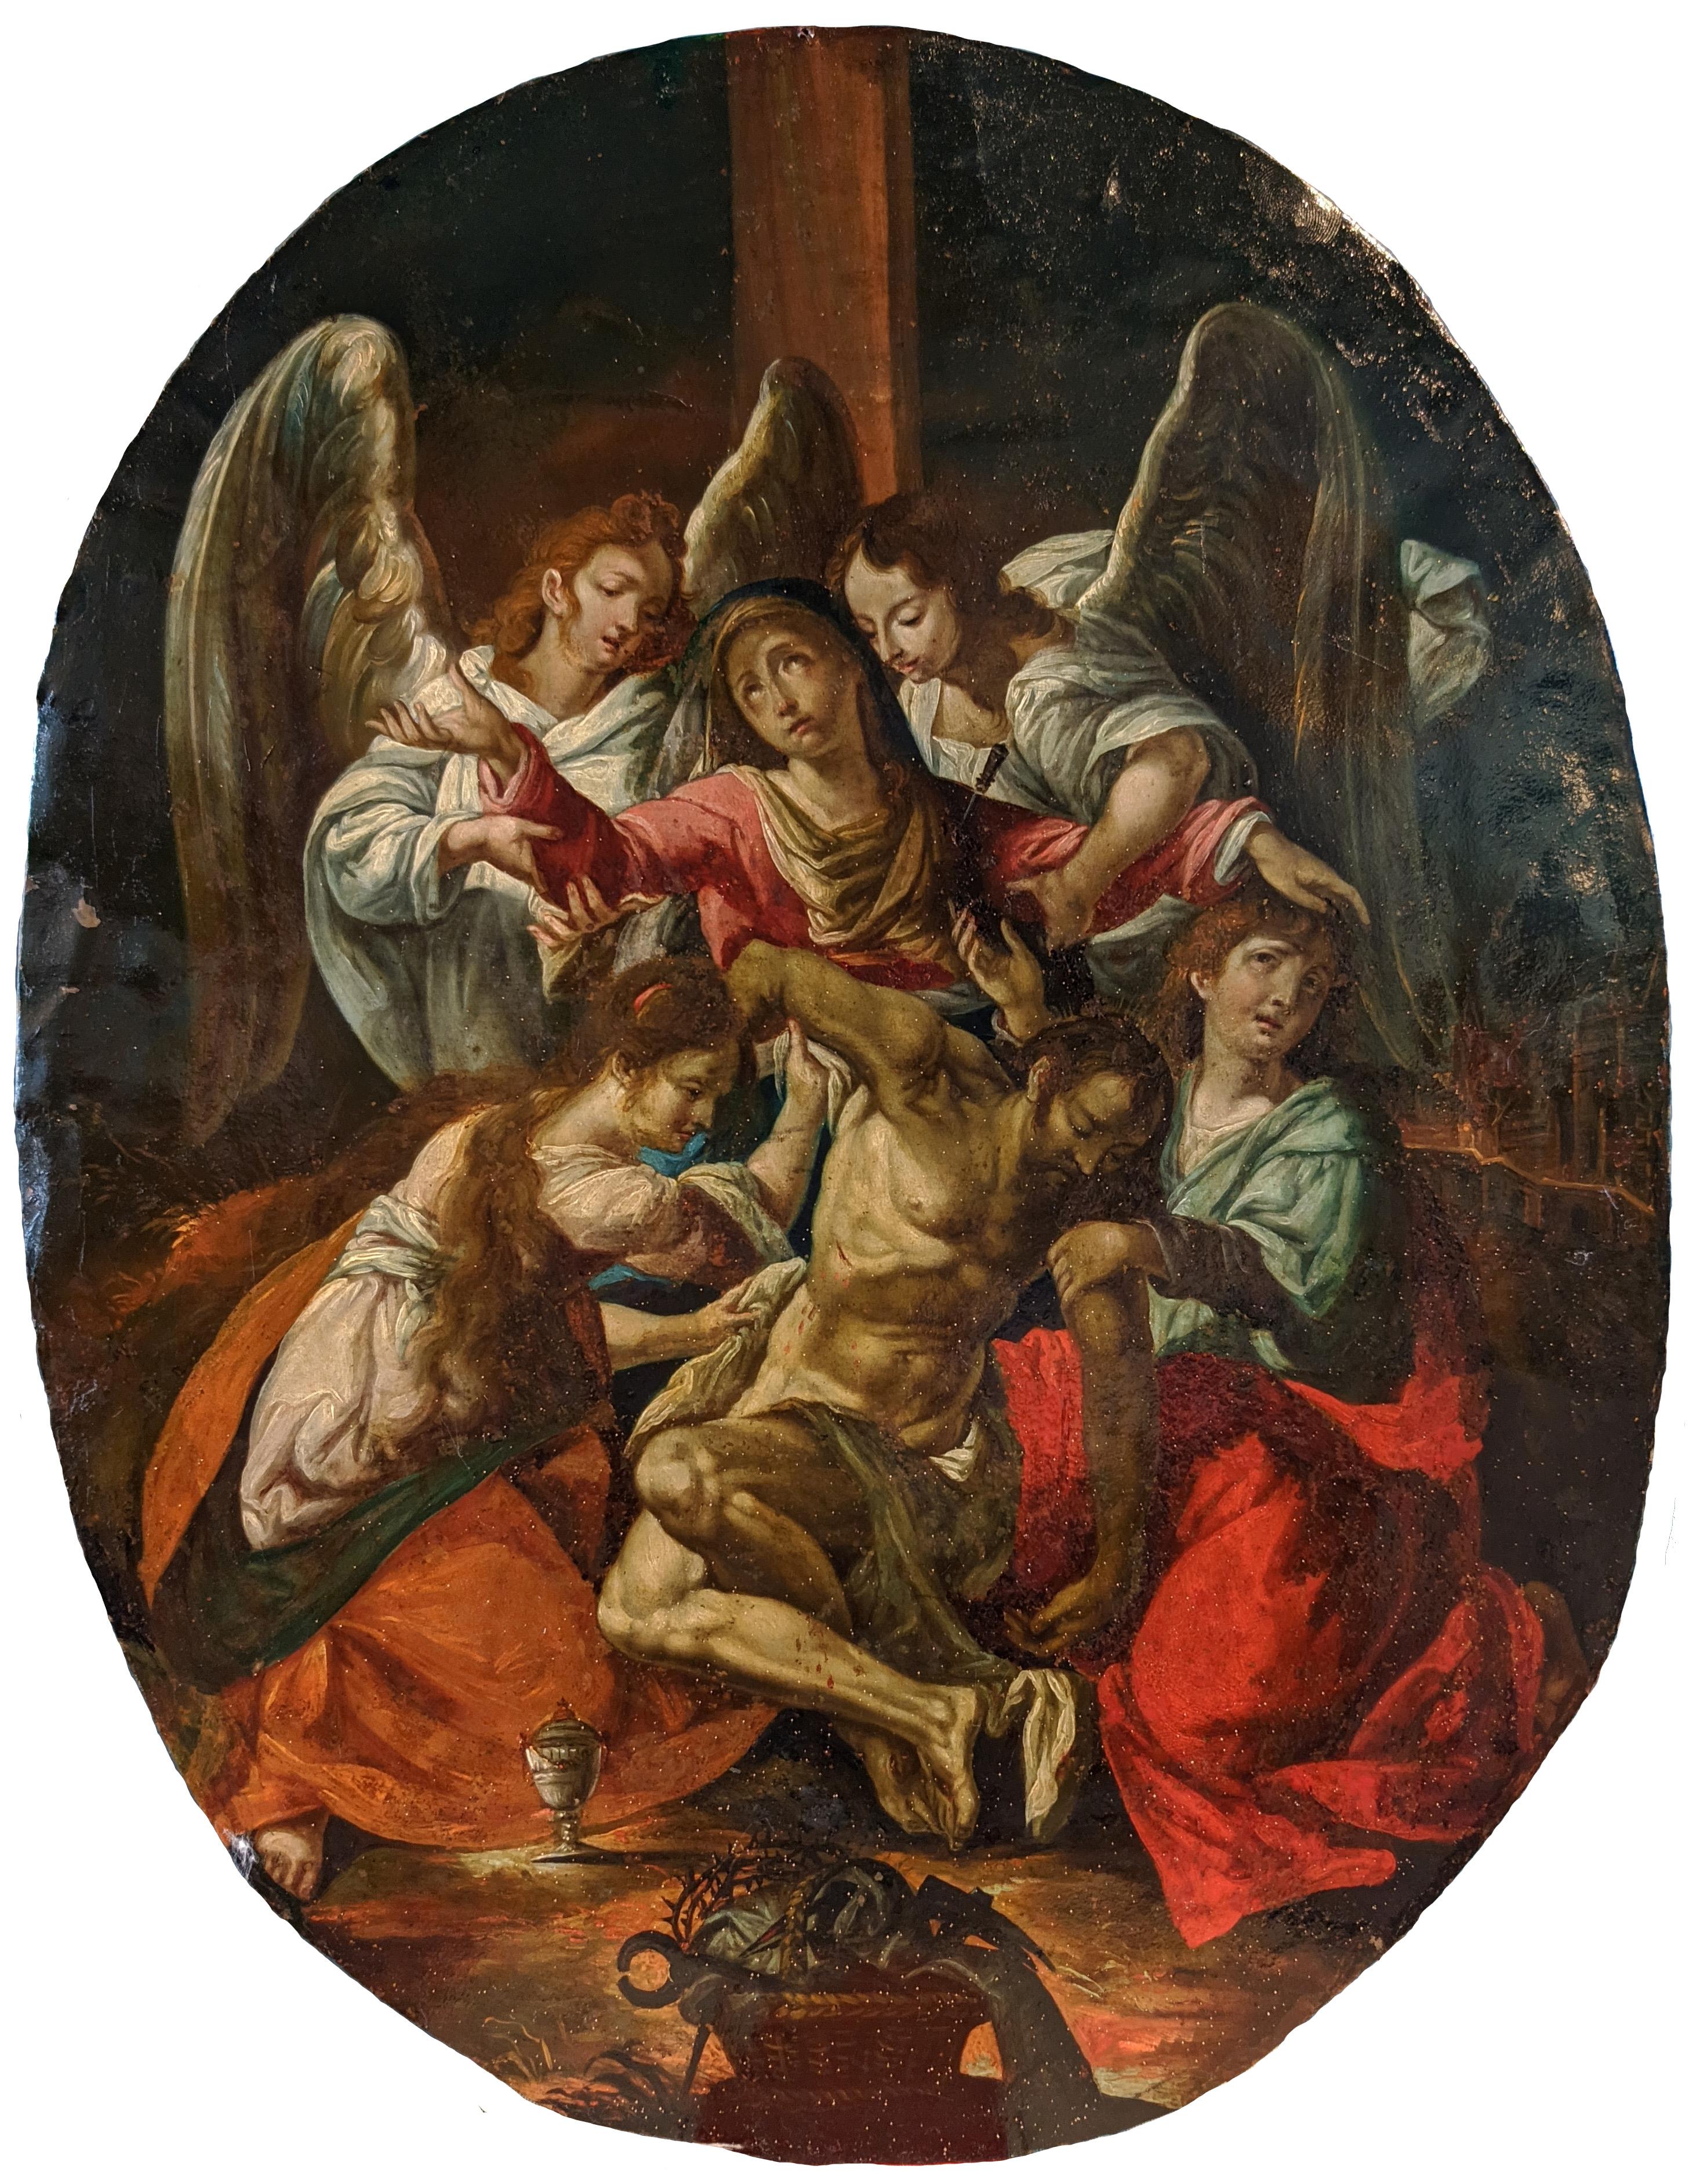 Late Renaissance copper after Joseph Heintz the Elder's Entombment of Christ 1